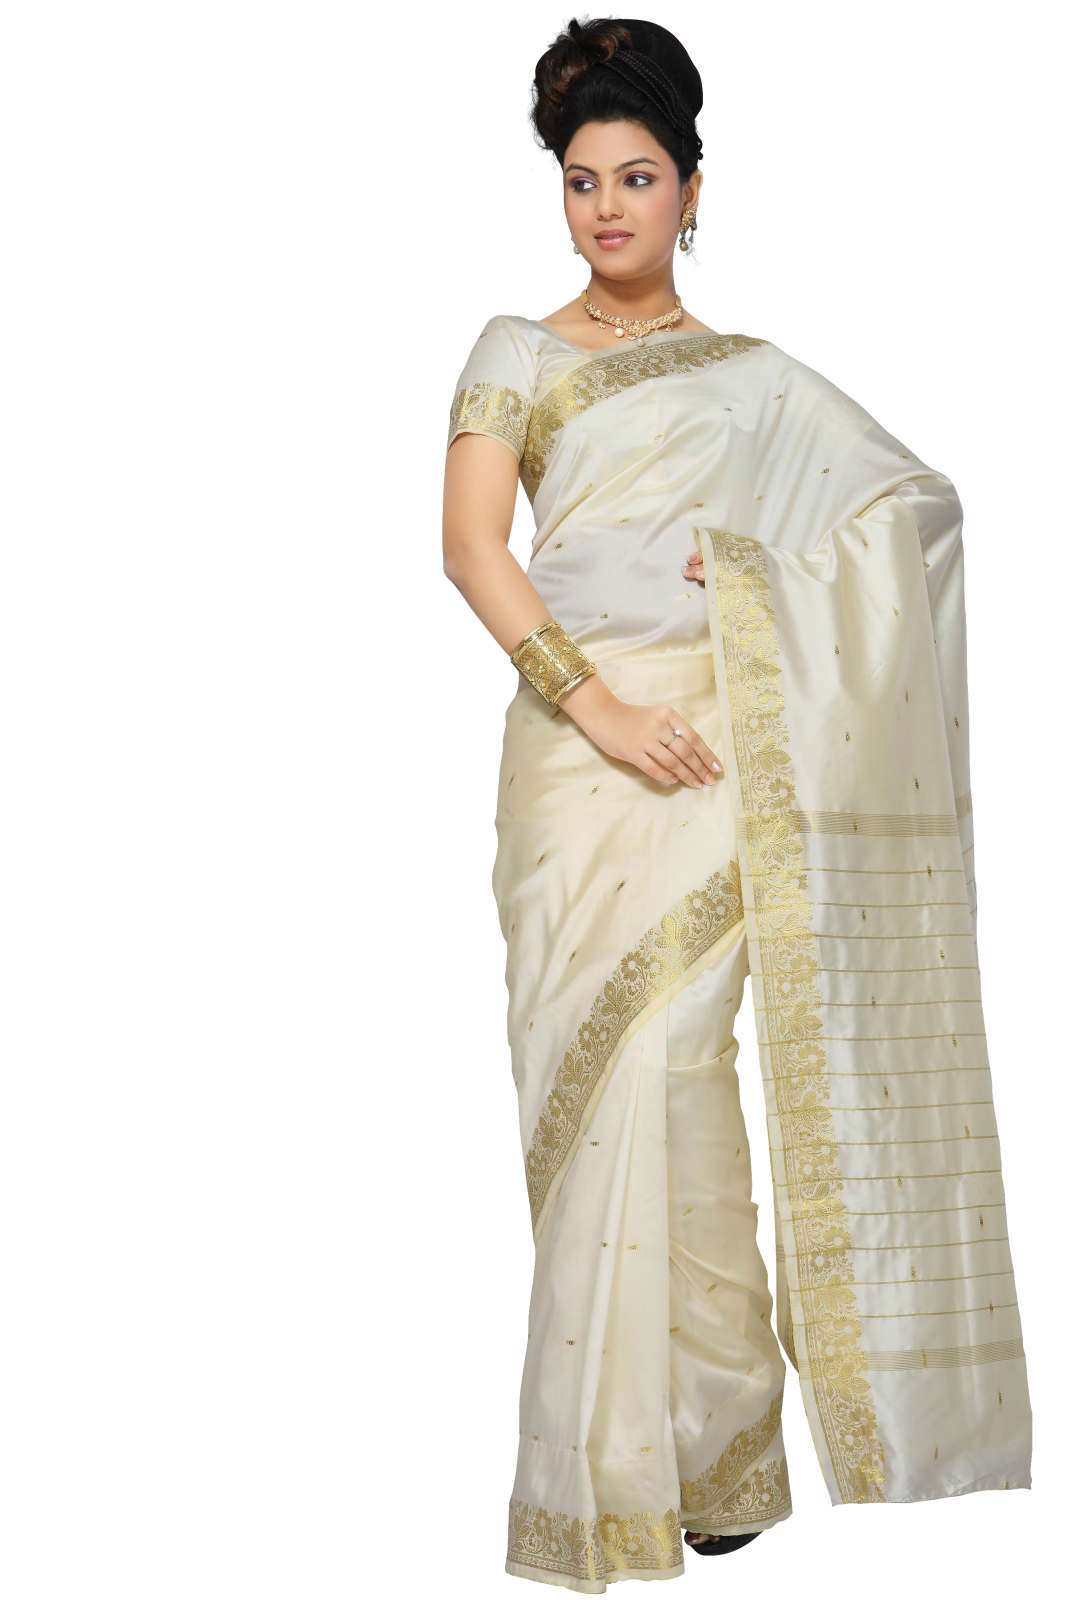 Indian Selections Cream Art Silk Saree Sari fabric India Golden Border